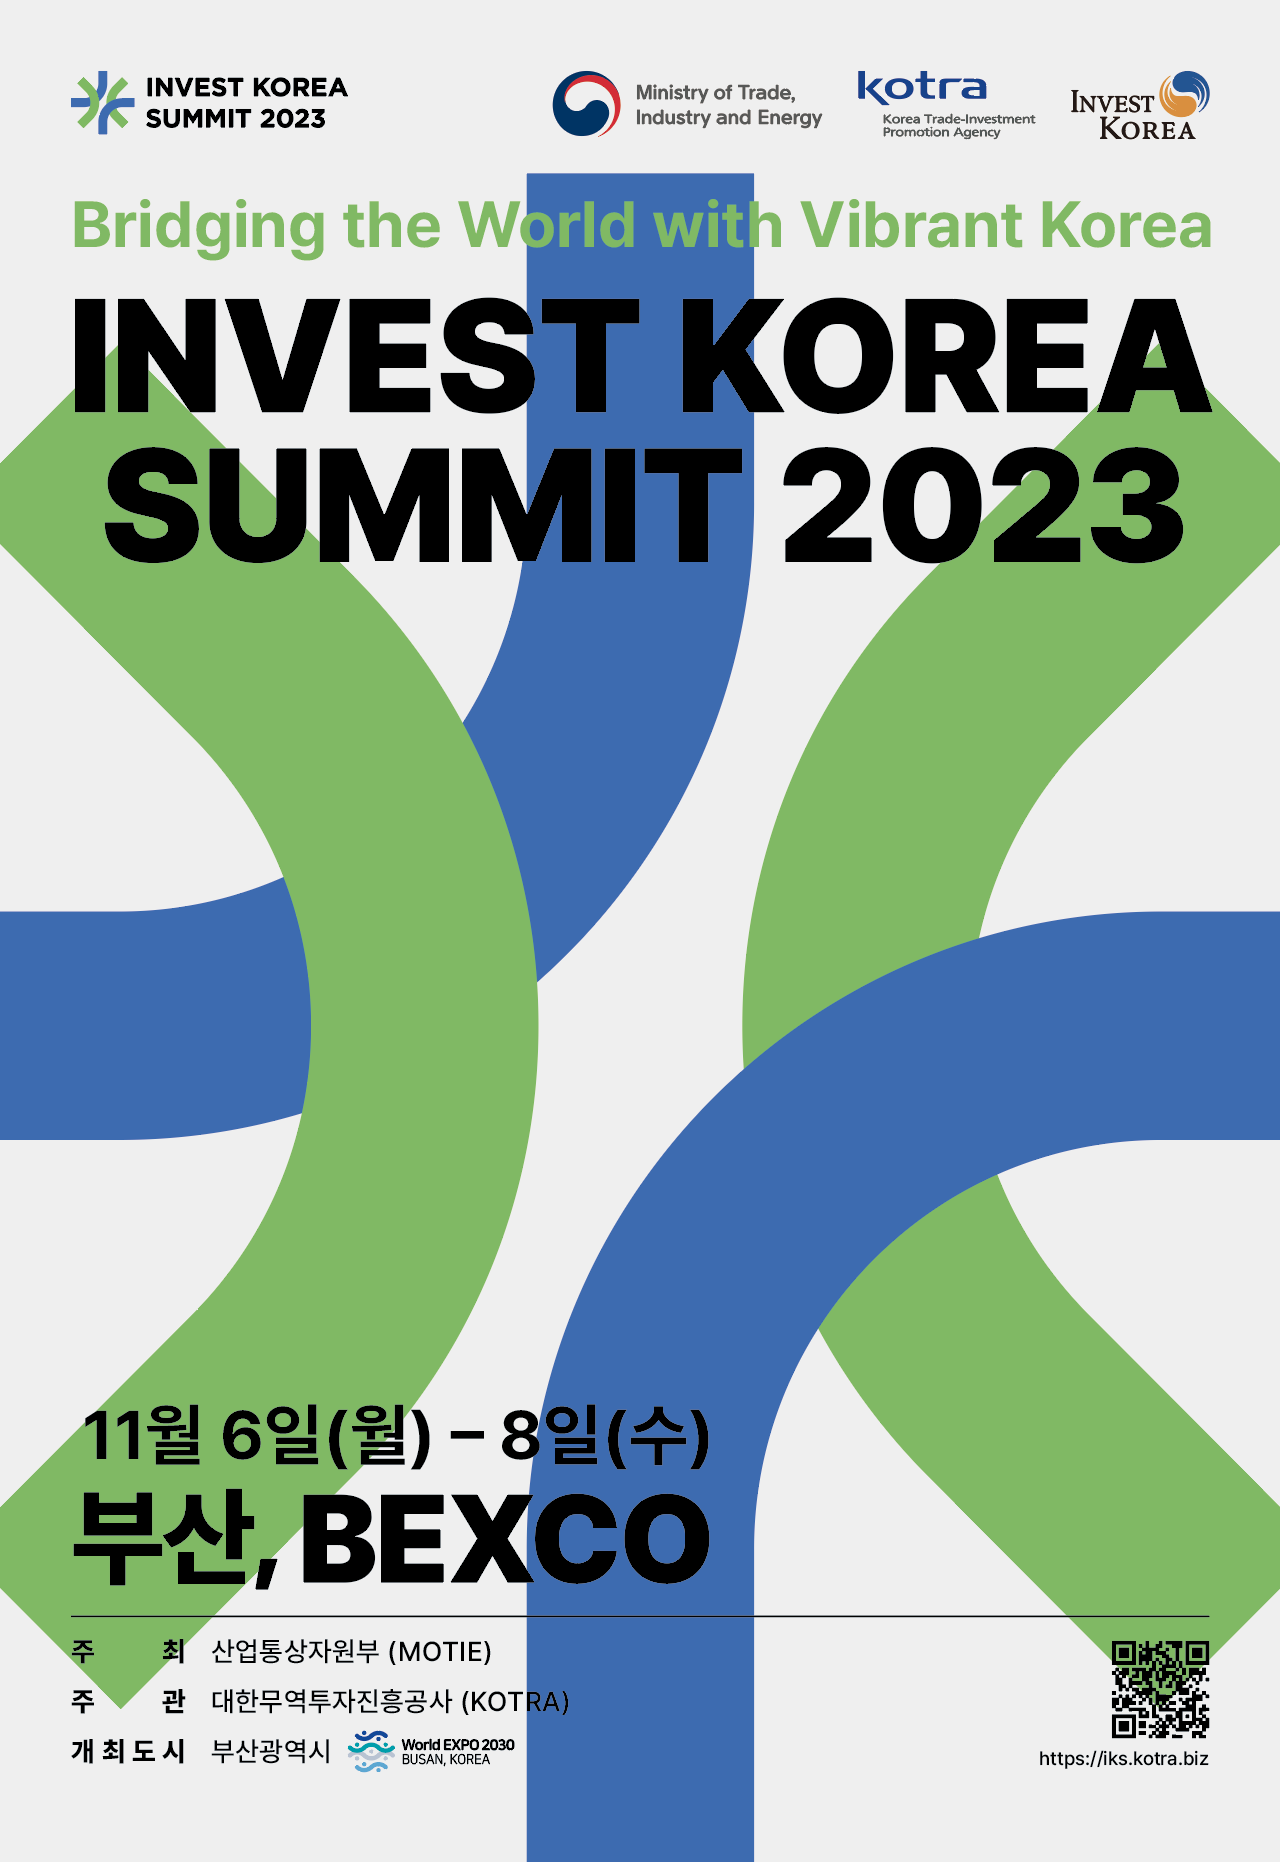 invest KOREA Summit 2023 개최